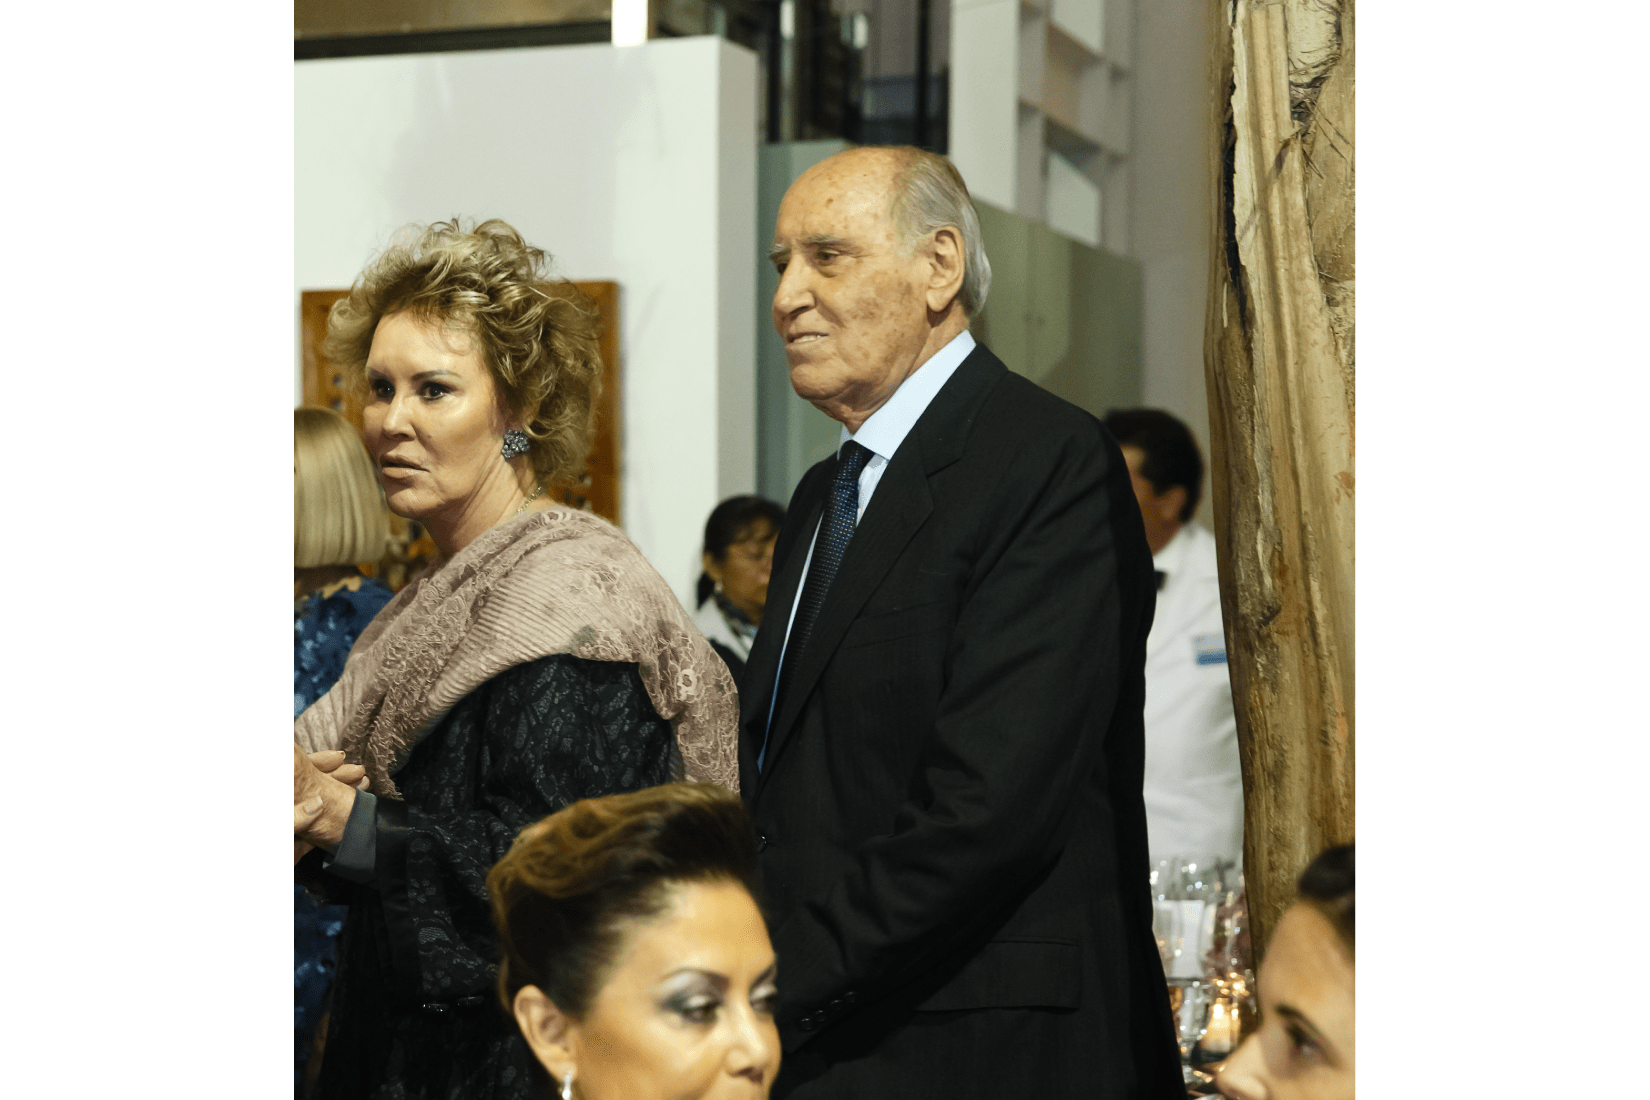 Mercedes Sánchez Navarro y Prudencio López en la cena del Décimo Aniversario del MAP.  (Foto: Eusebio Pérez / Quien).